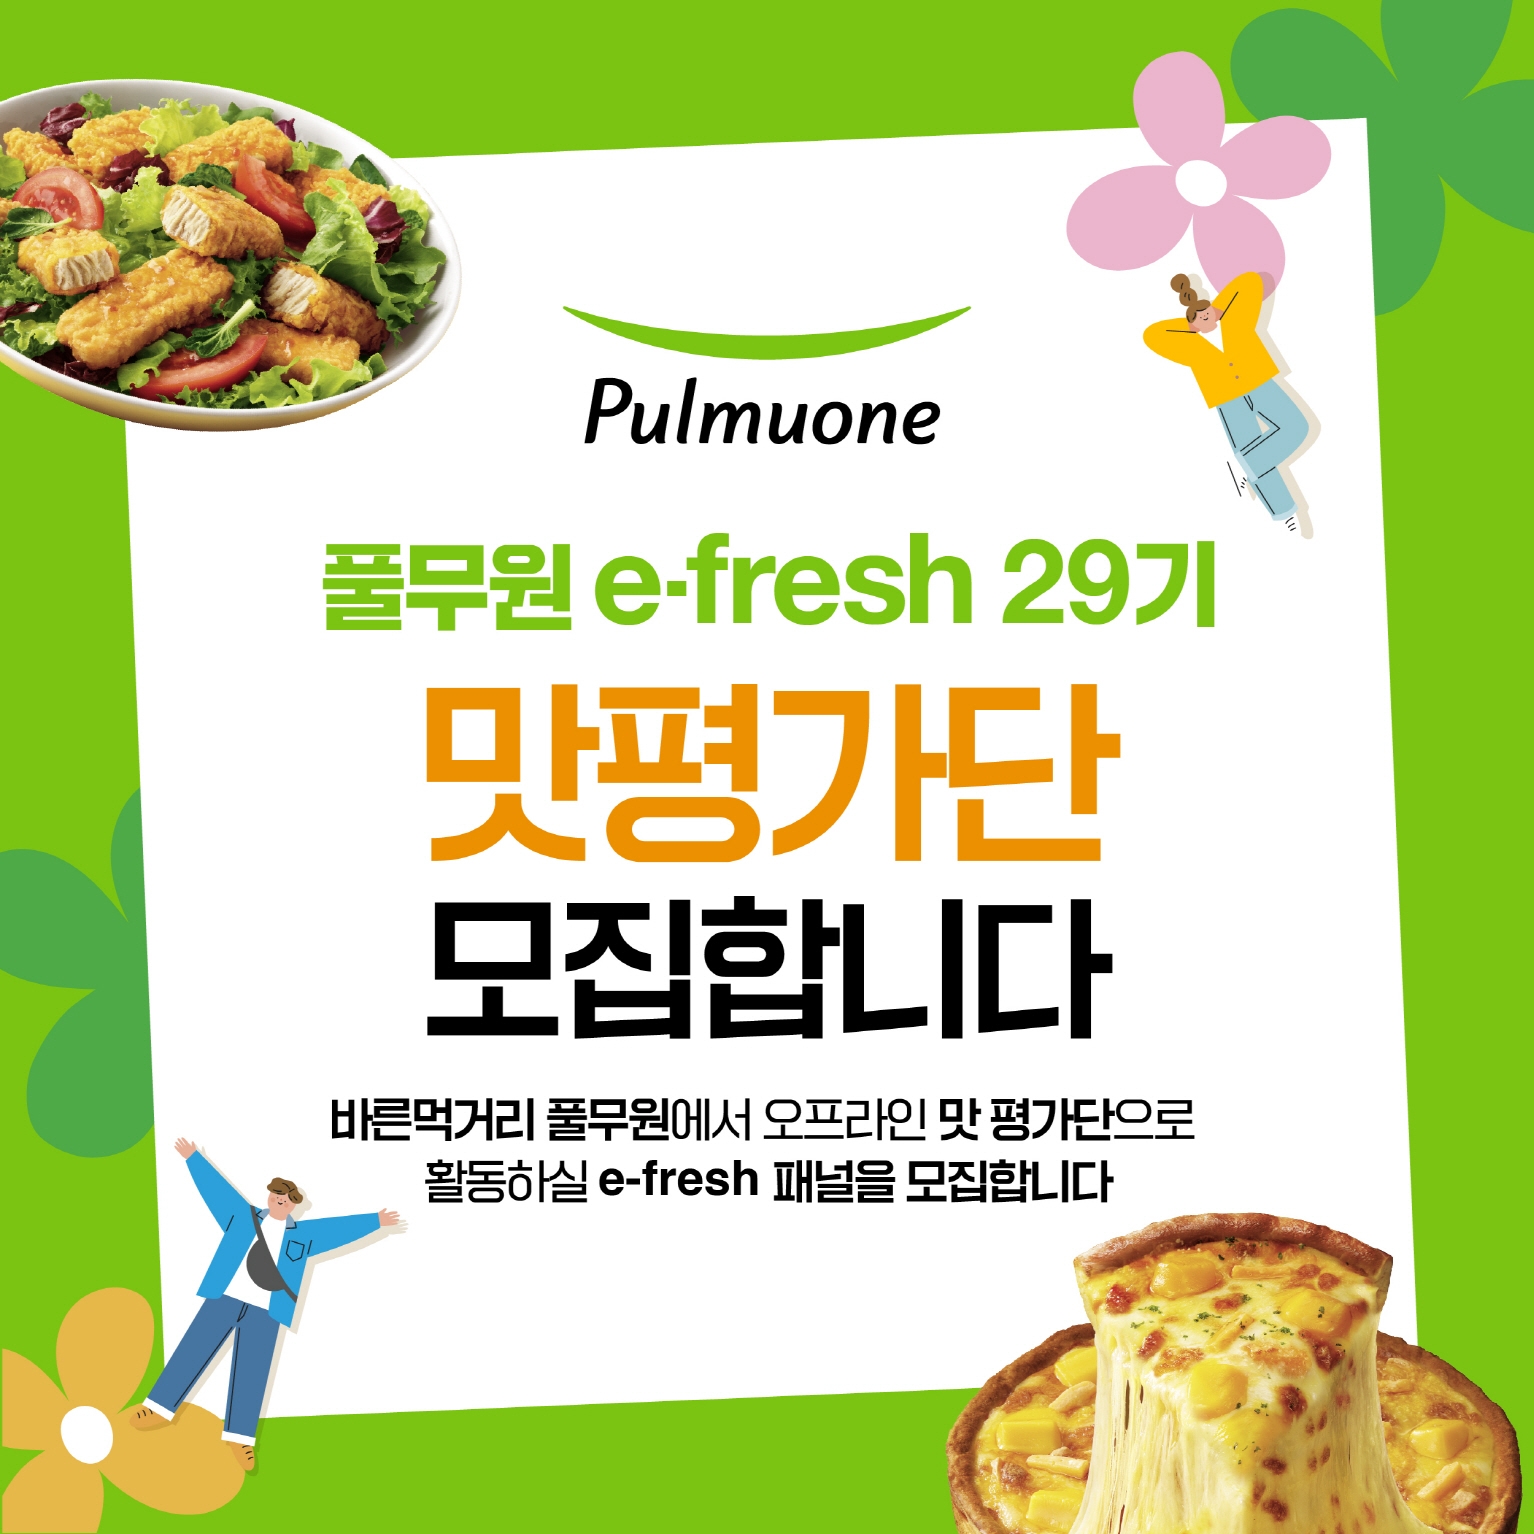 [생활경제 이슈] 풀무원, 오프라인 맛 평가단 ‘e-fresh’ 29기 모집 外